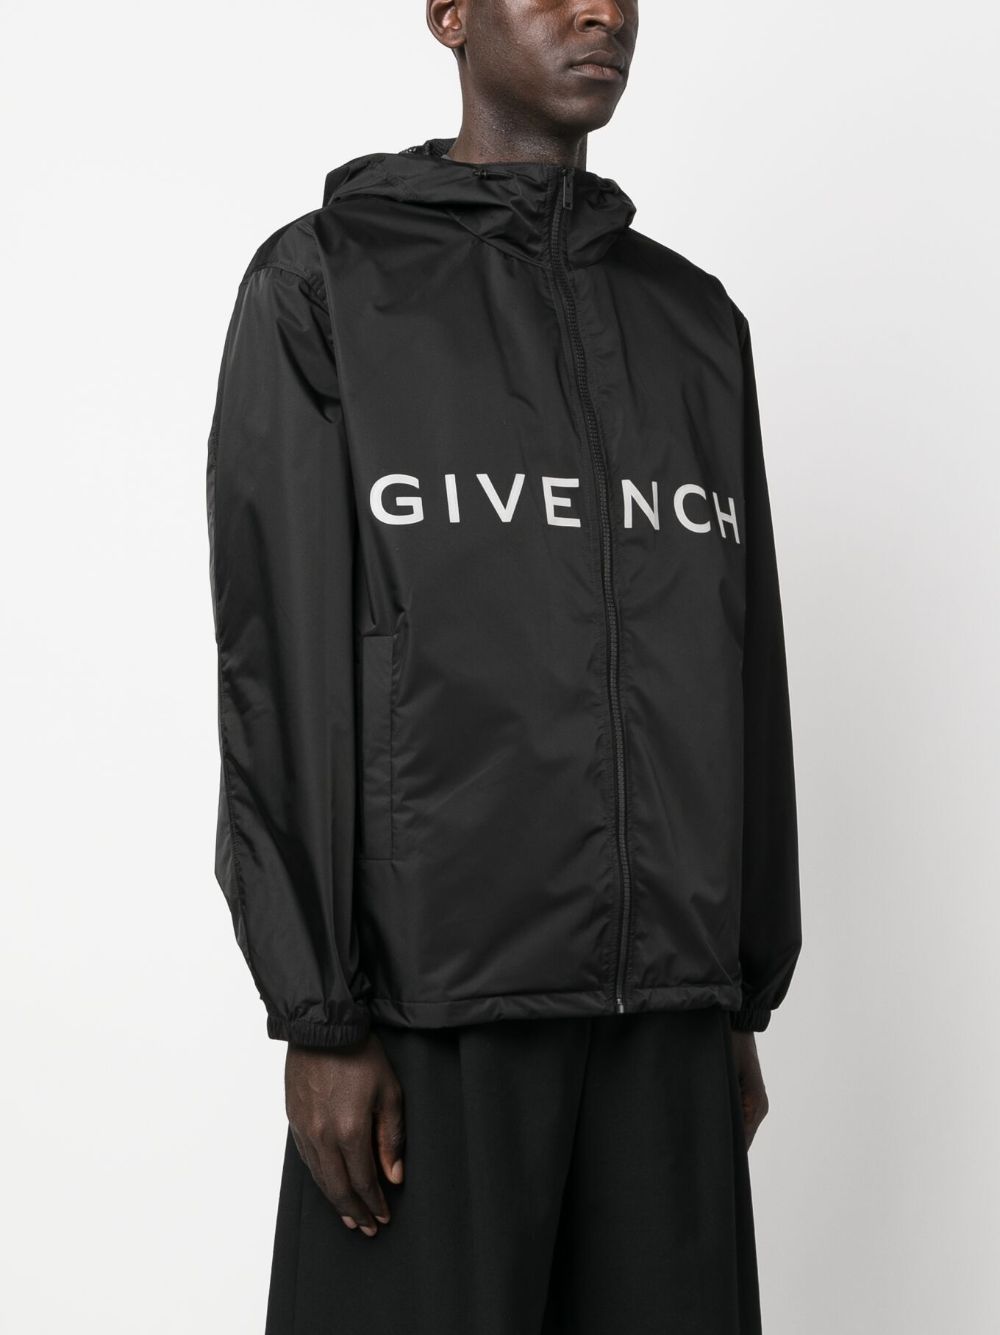 Givenchy Coats Black